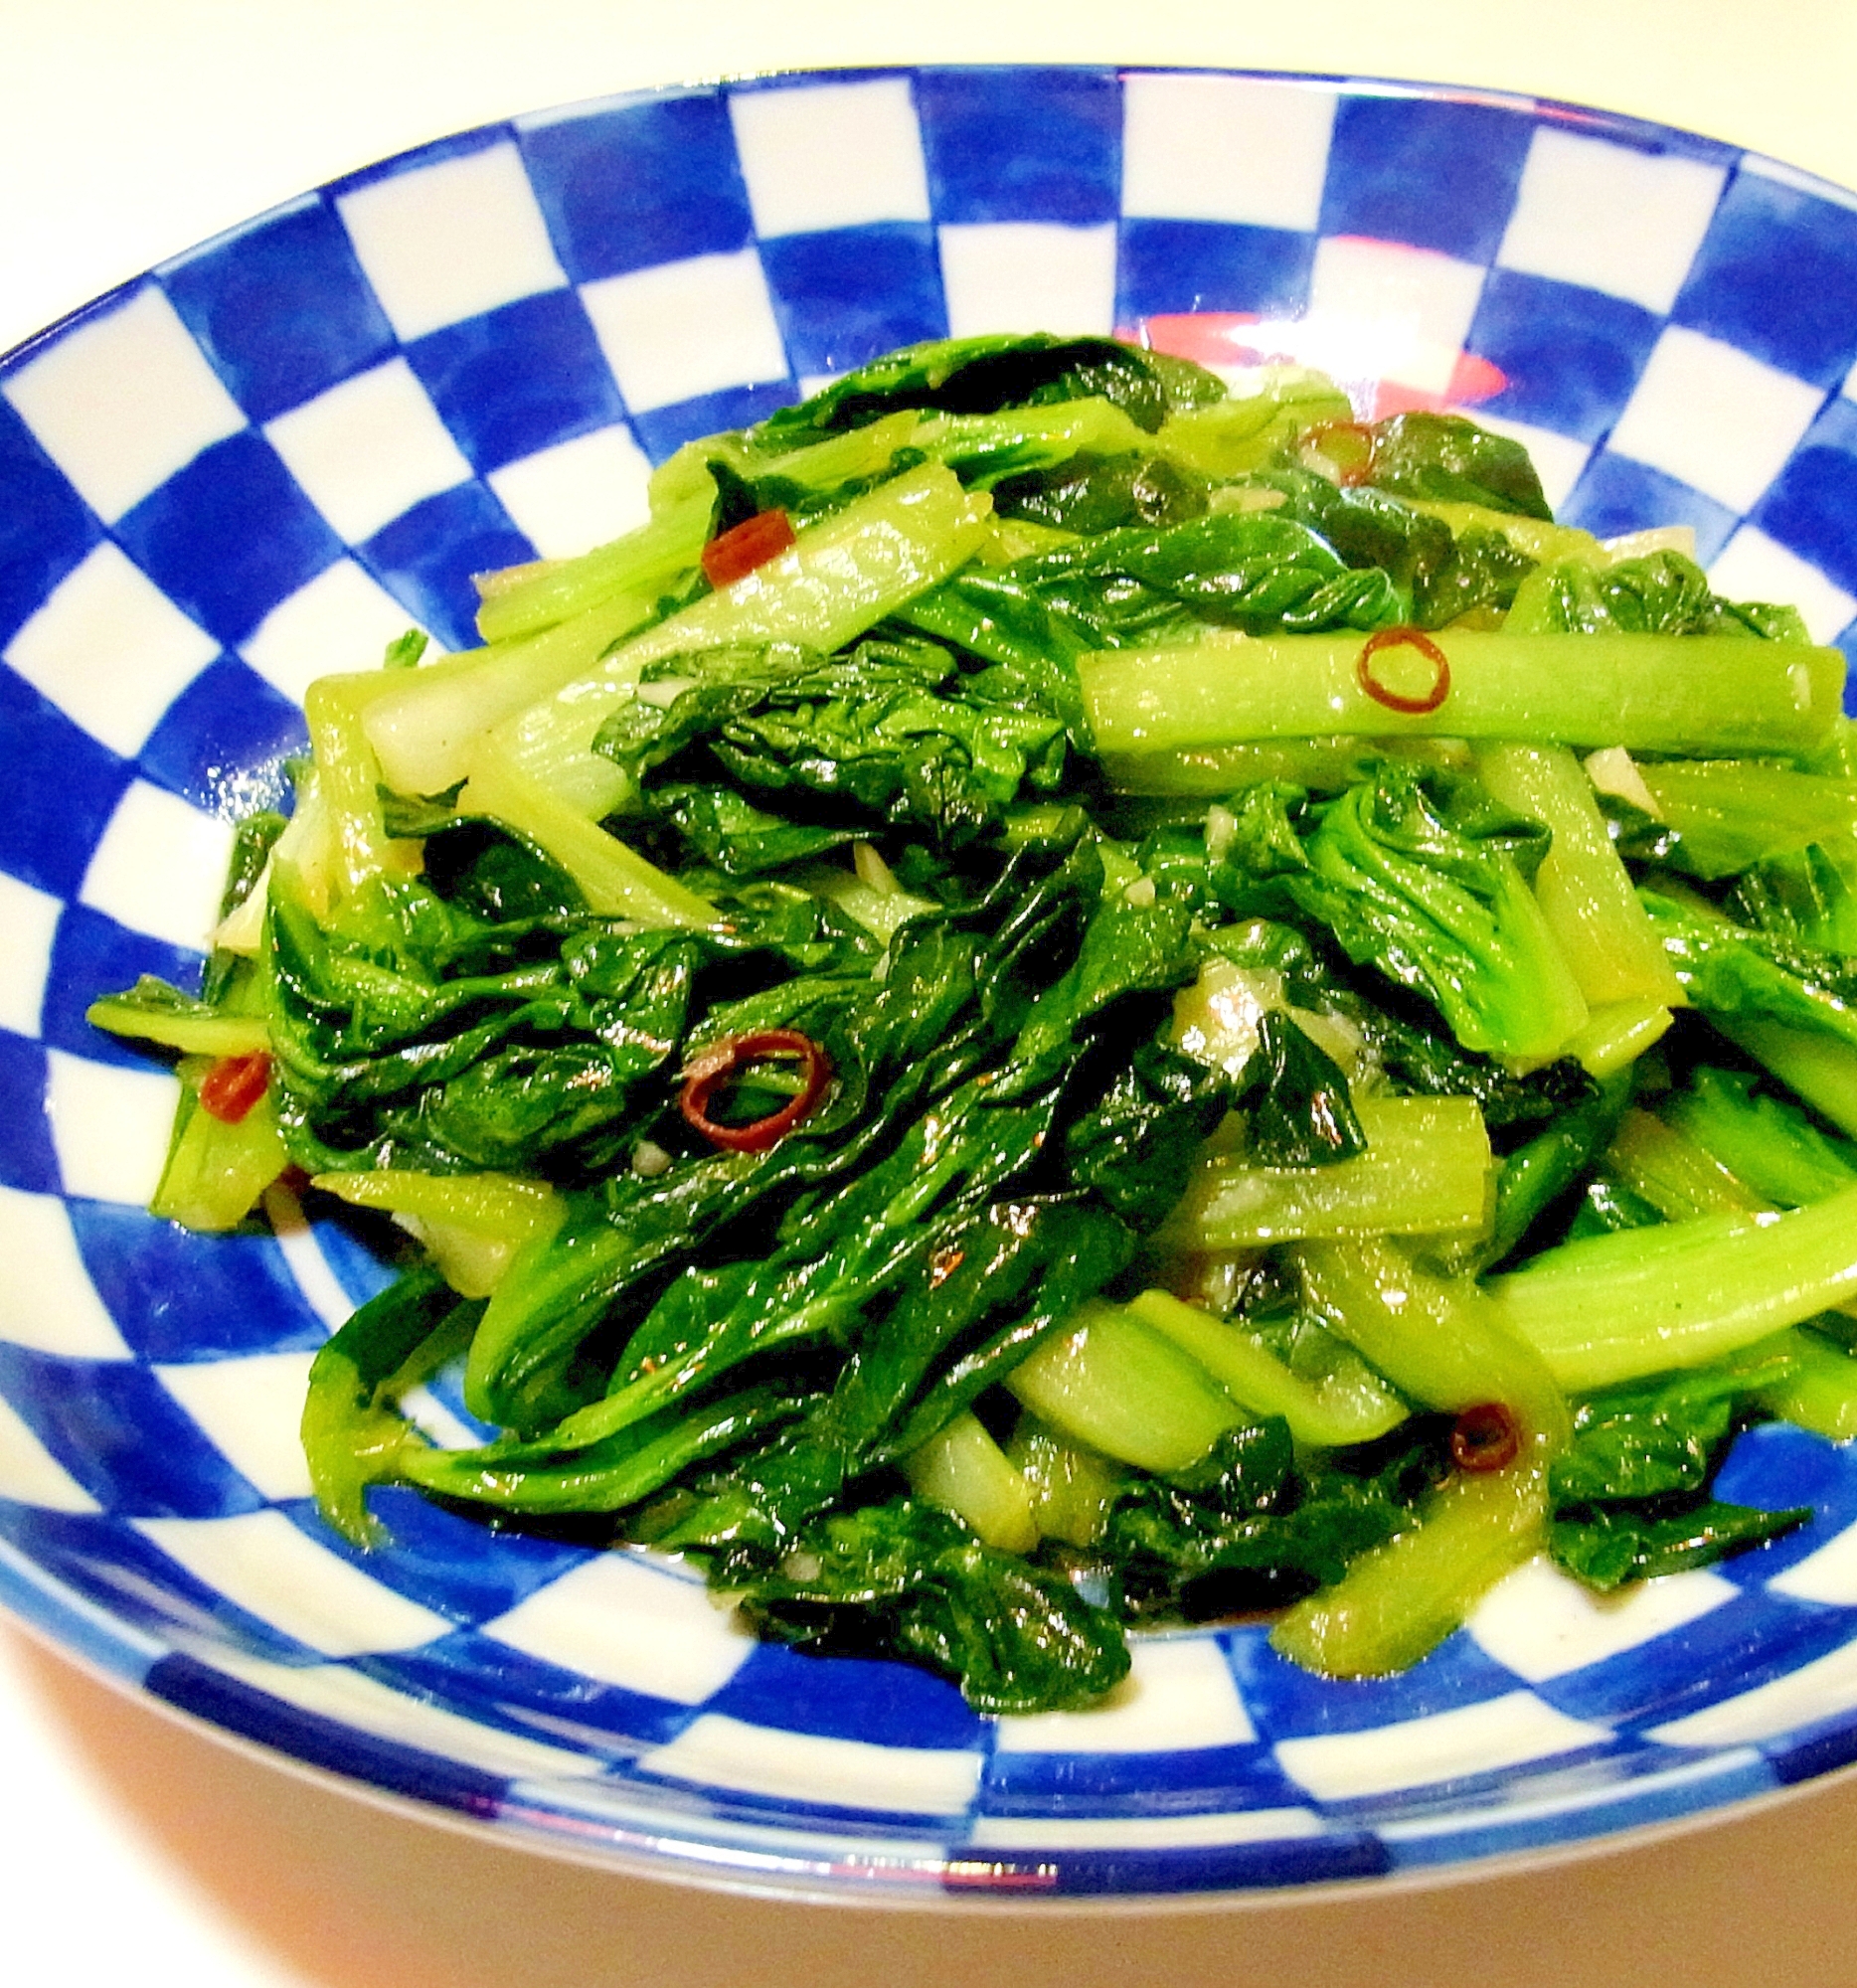 中国野菜 ターサイのおすすめレシピ21選 和え物や煮物も Macaroni